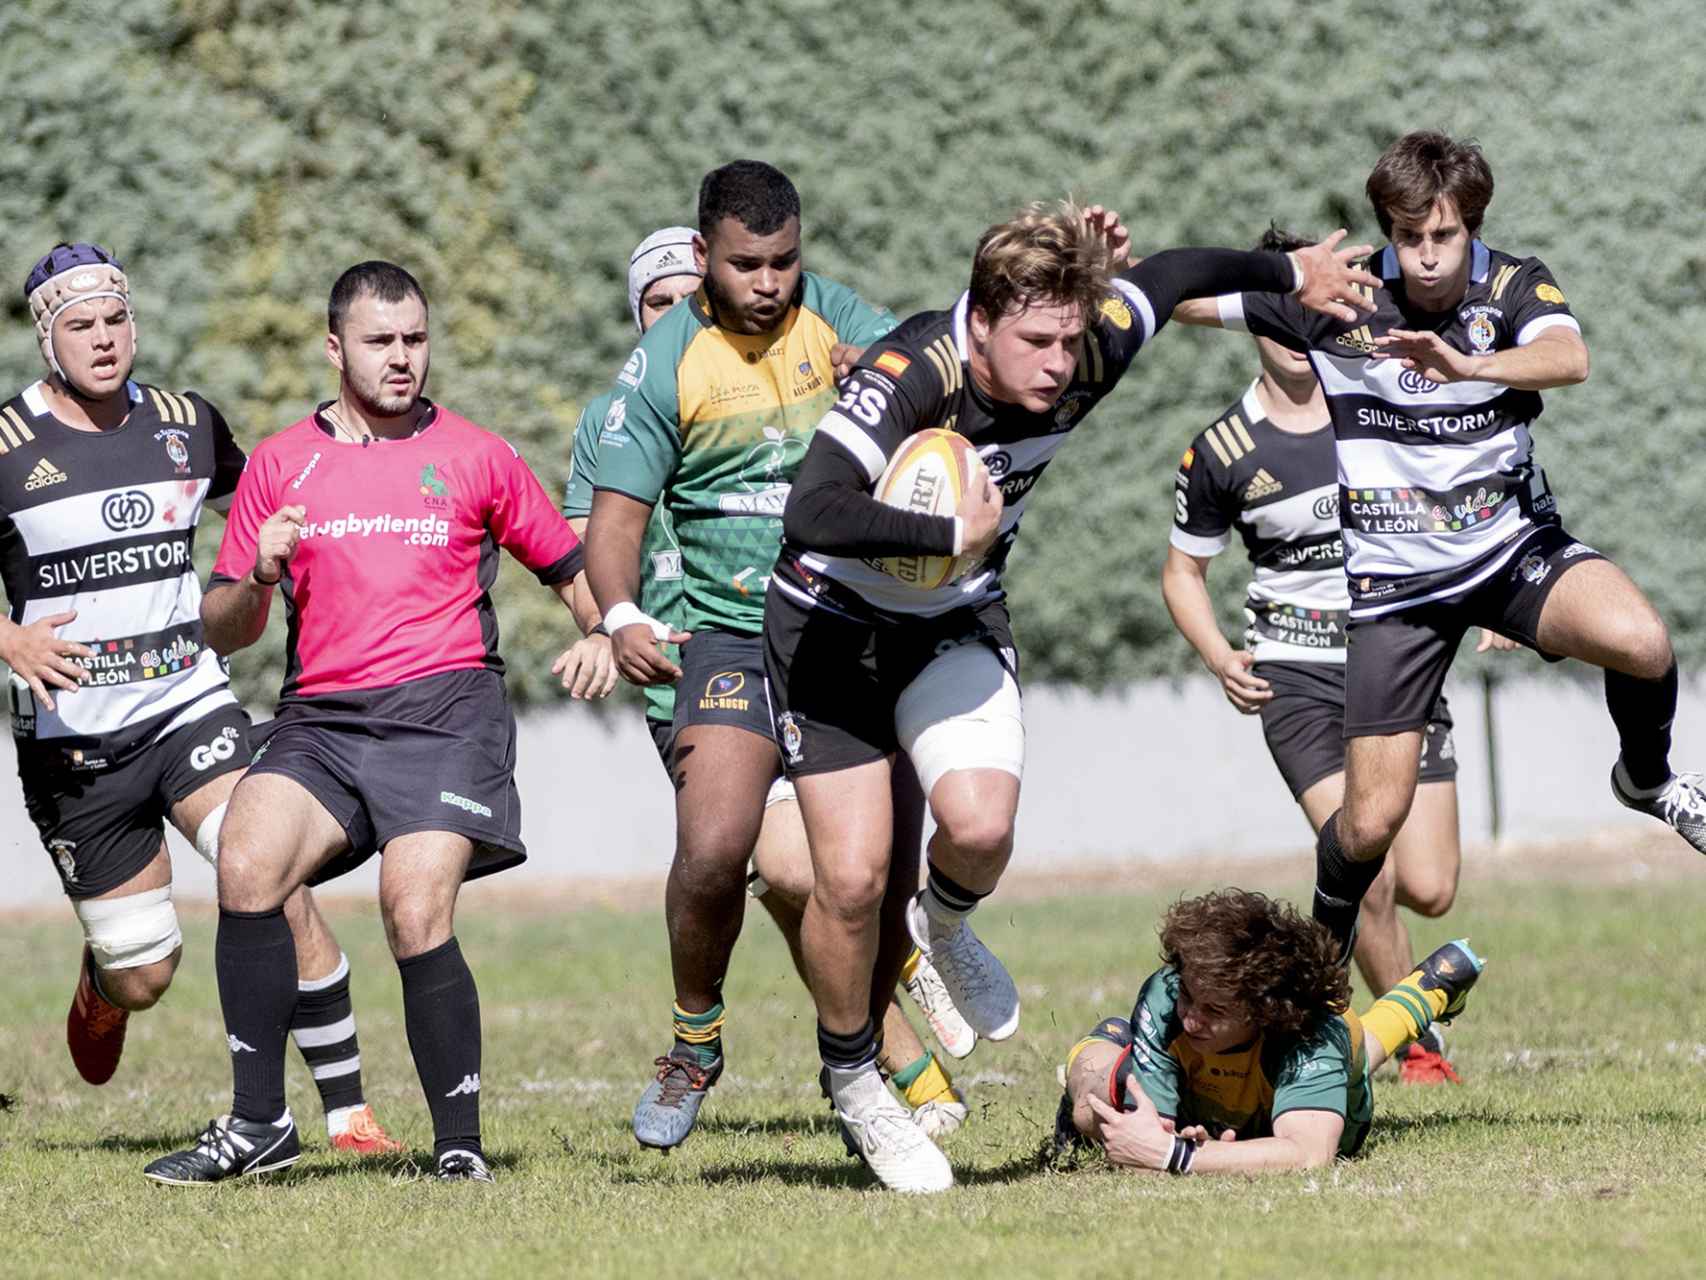 Imagen de un partido de esta temporada del club El Salvador Rugby.